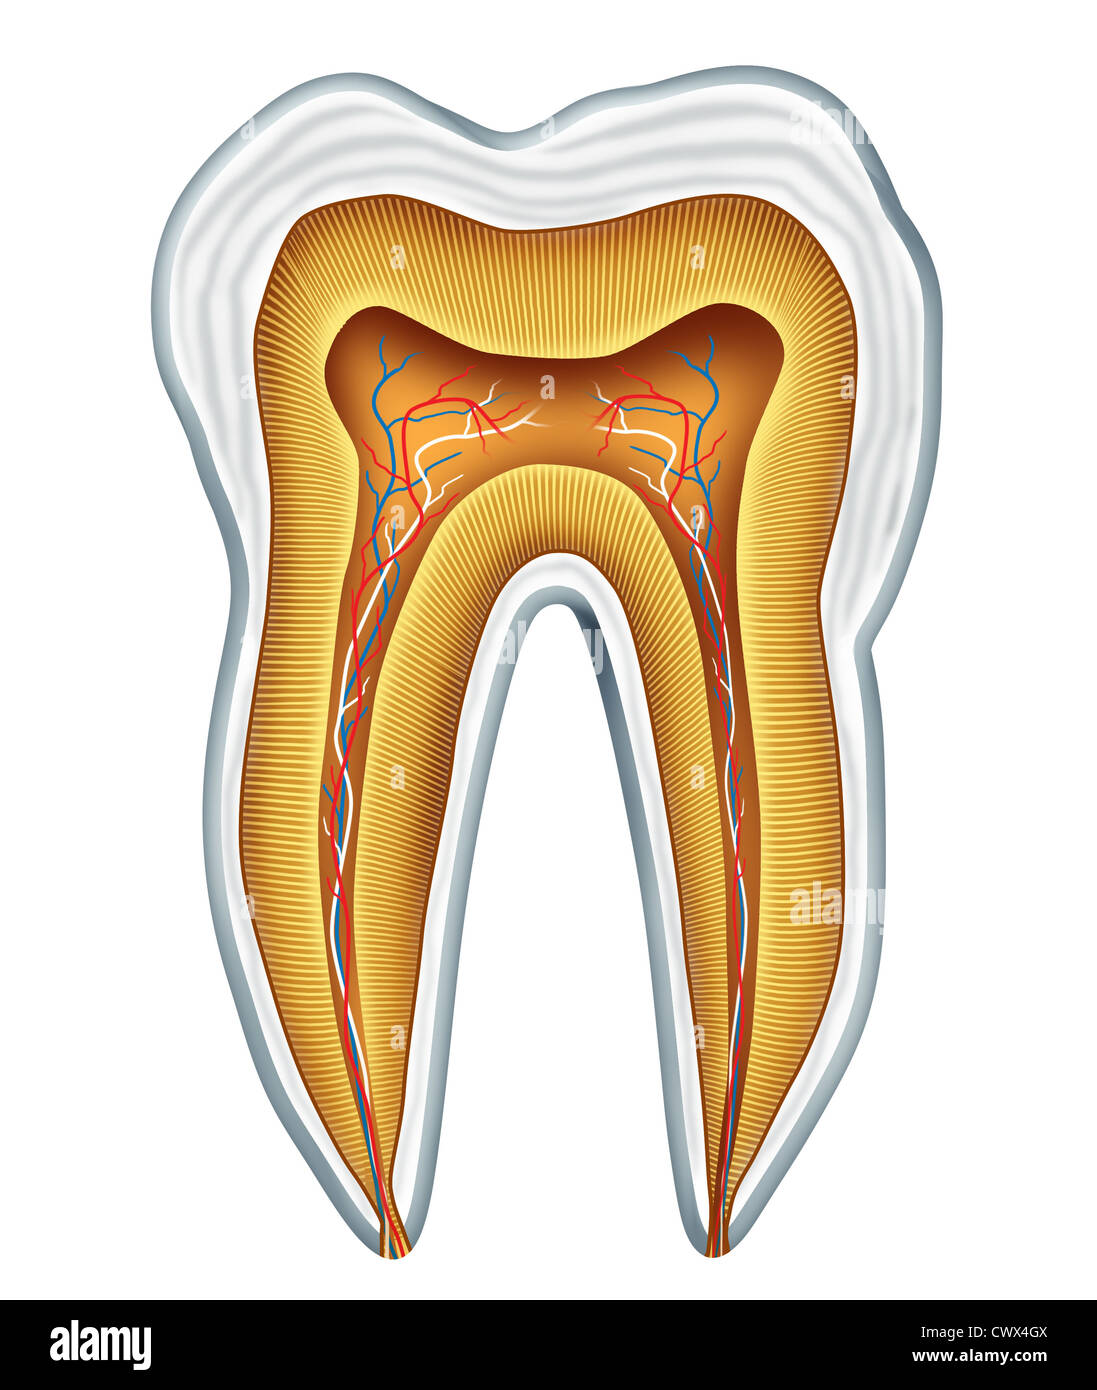 L'anatomie de la dent pour la section clinique dentaire et médicale chirurgien dentiste dentiste représentant la Chirurgie, Médecine et art dentaire représenté par une cavité en bonne santé gratuitement vue frontale montrant l'intérieur de la partie du corps crâne humain. Banque D'Images